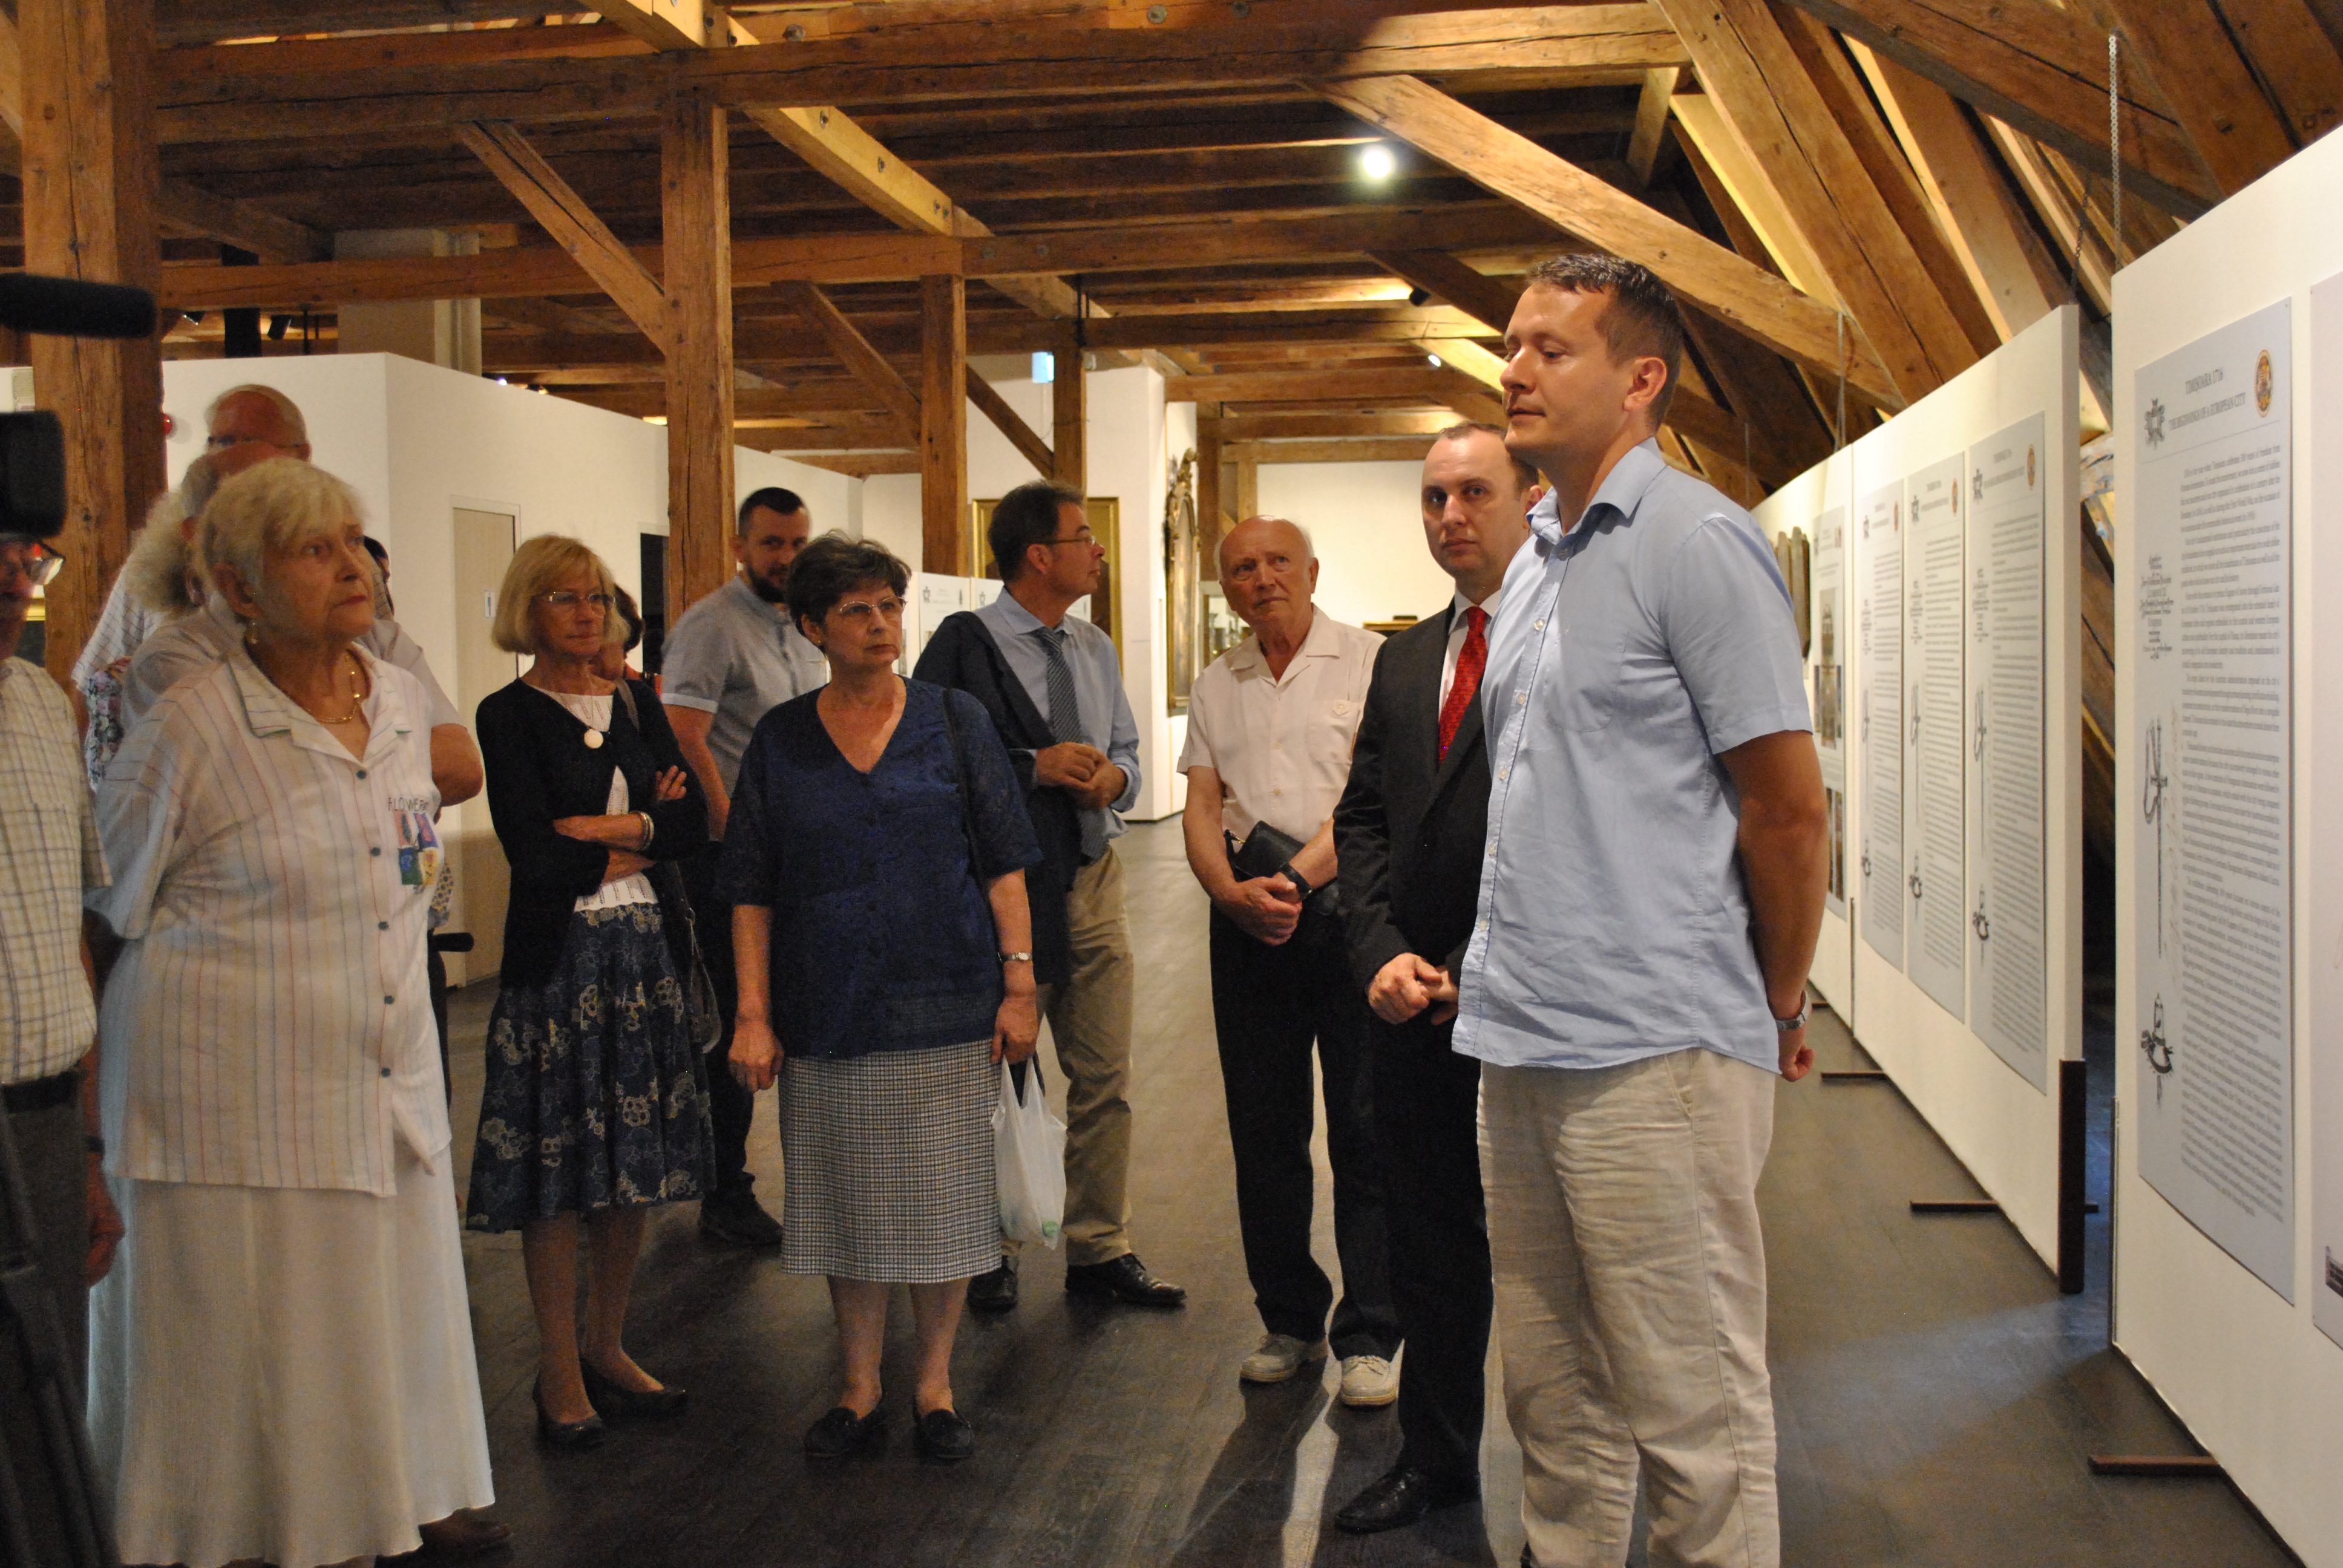 Besichtigung der Ausstellung in der Theresien Bastei mit dem Kurator Dr. Ciprian Glvan